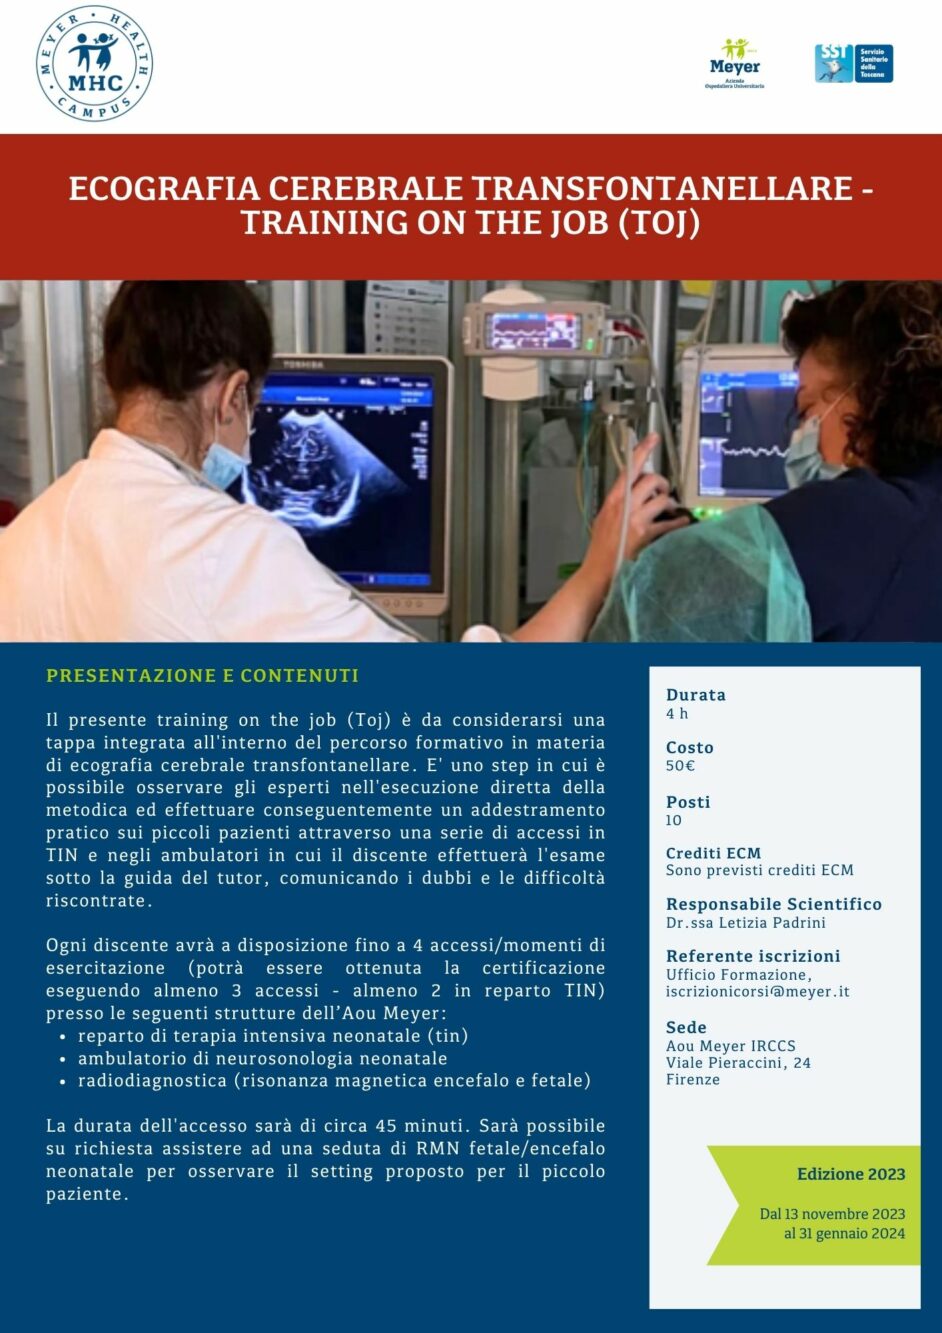 Ecografia cerebrale transfontanellare – Training on the job (Toj) (13 Novembre 2023-31 Gennaio 2024)